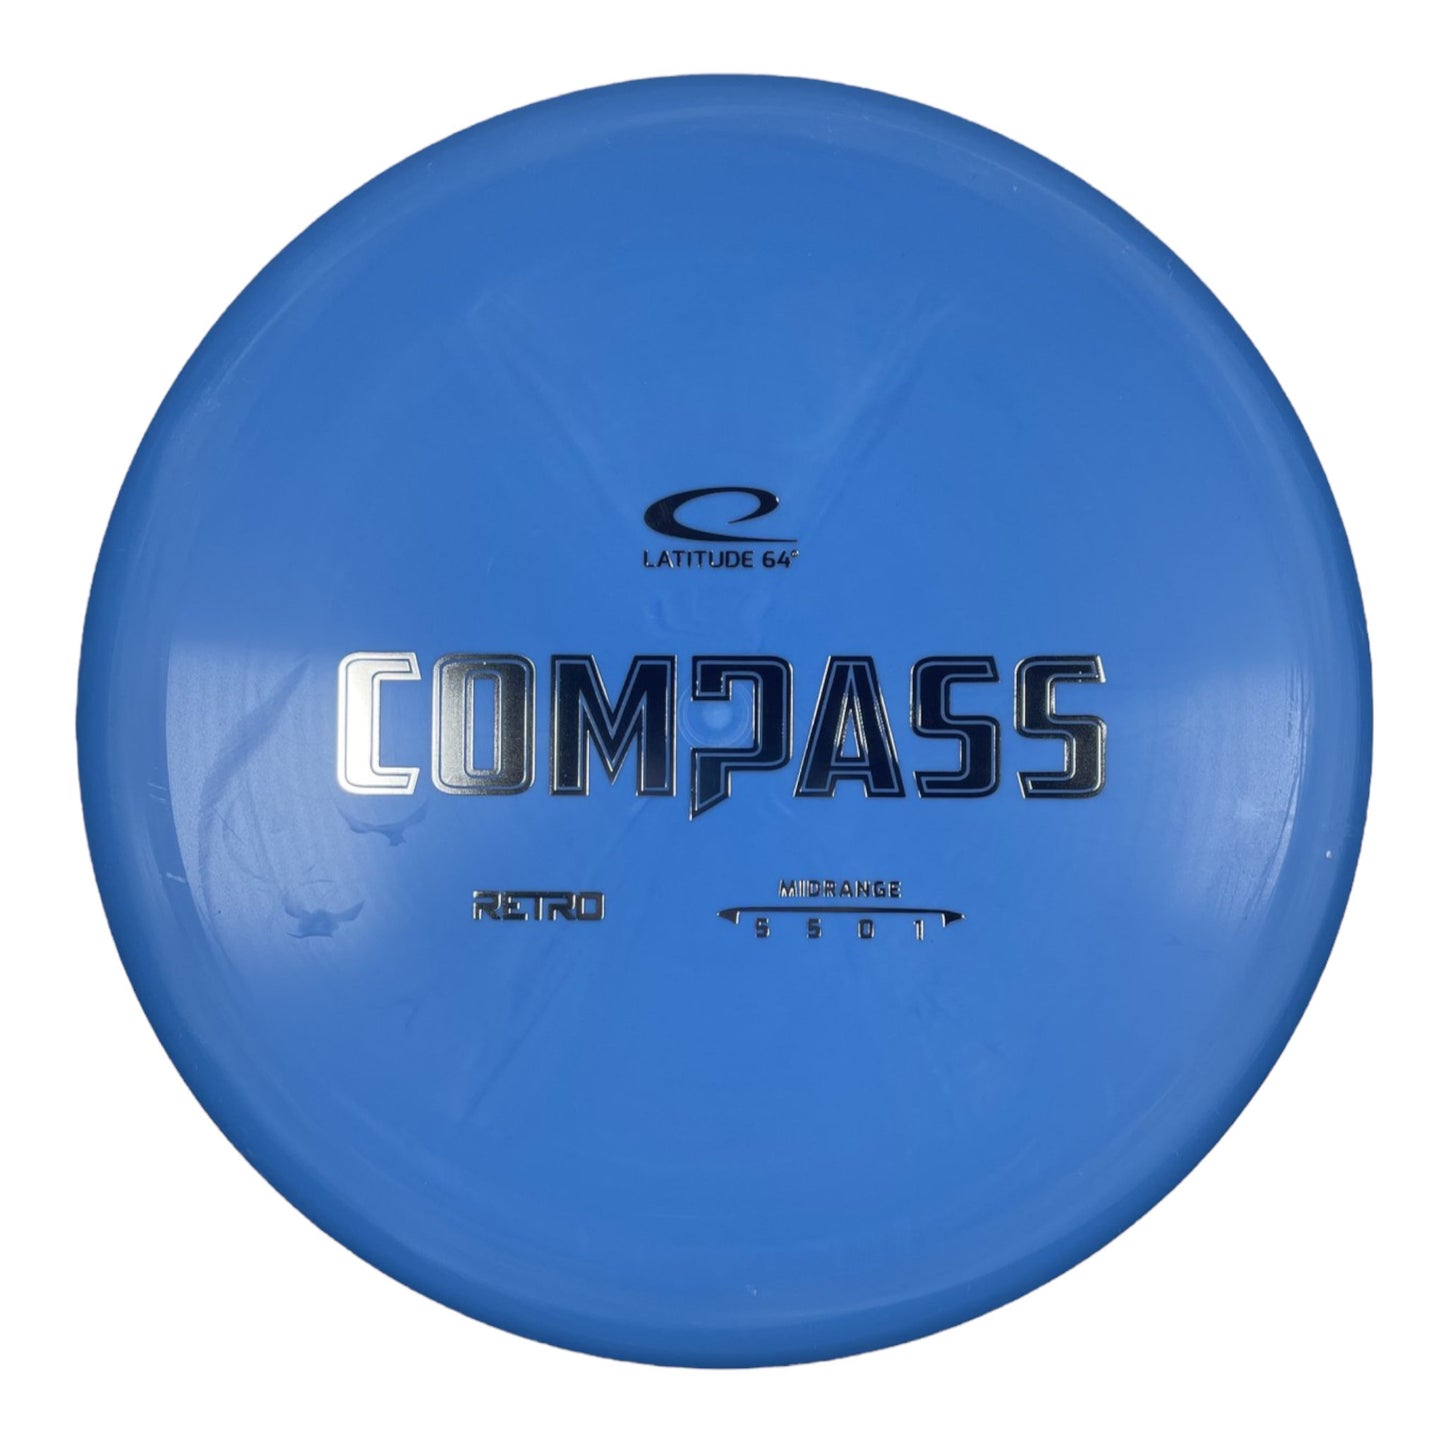 Latitude 64 Compass | Retro | Blue/Silver 177g Disc Golf